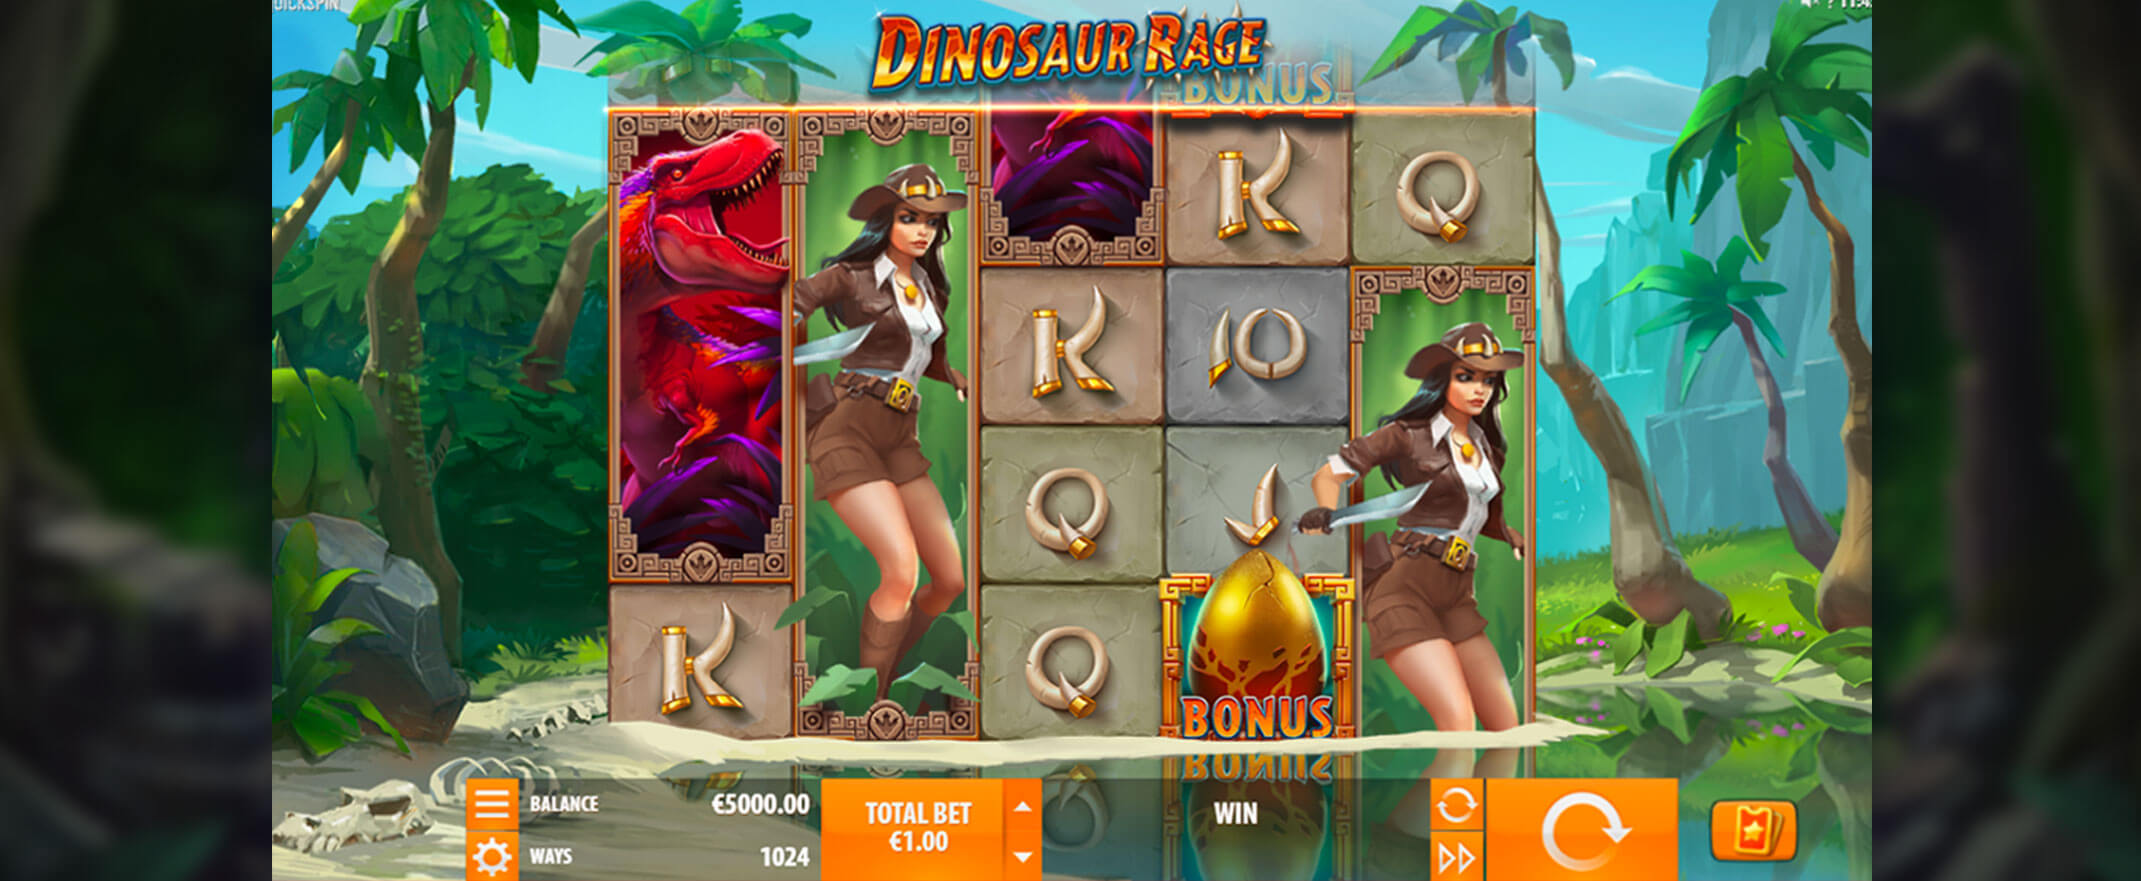 Dinosaur Rage Spielautomaten Bewertung, Walzen und Symbolen